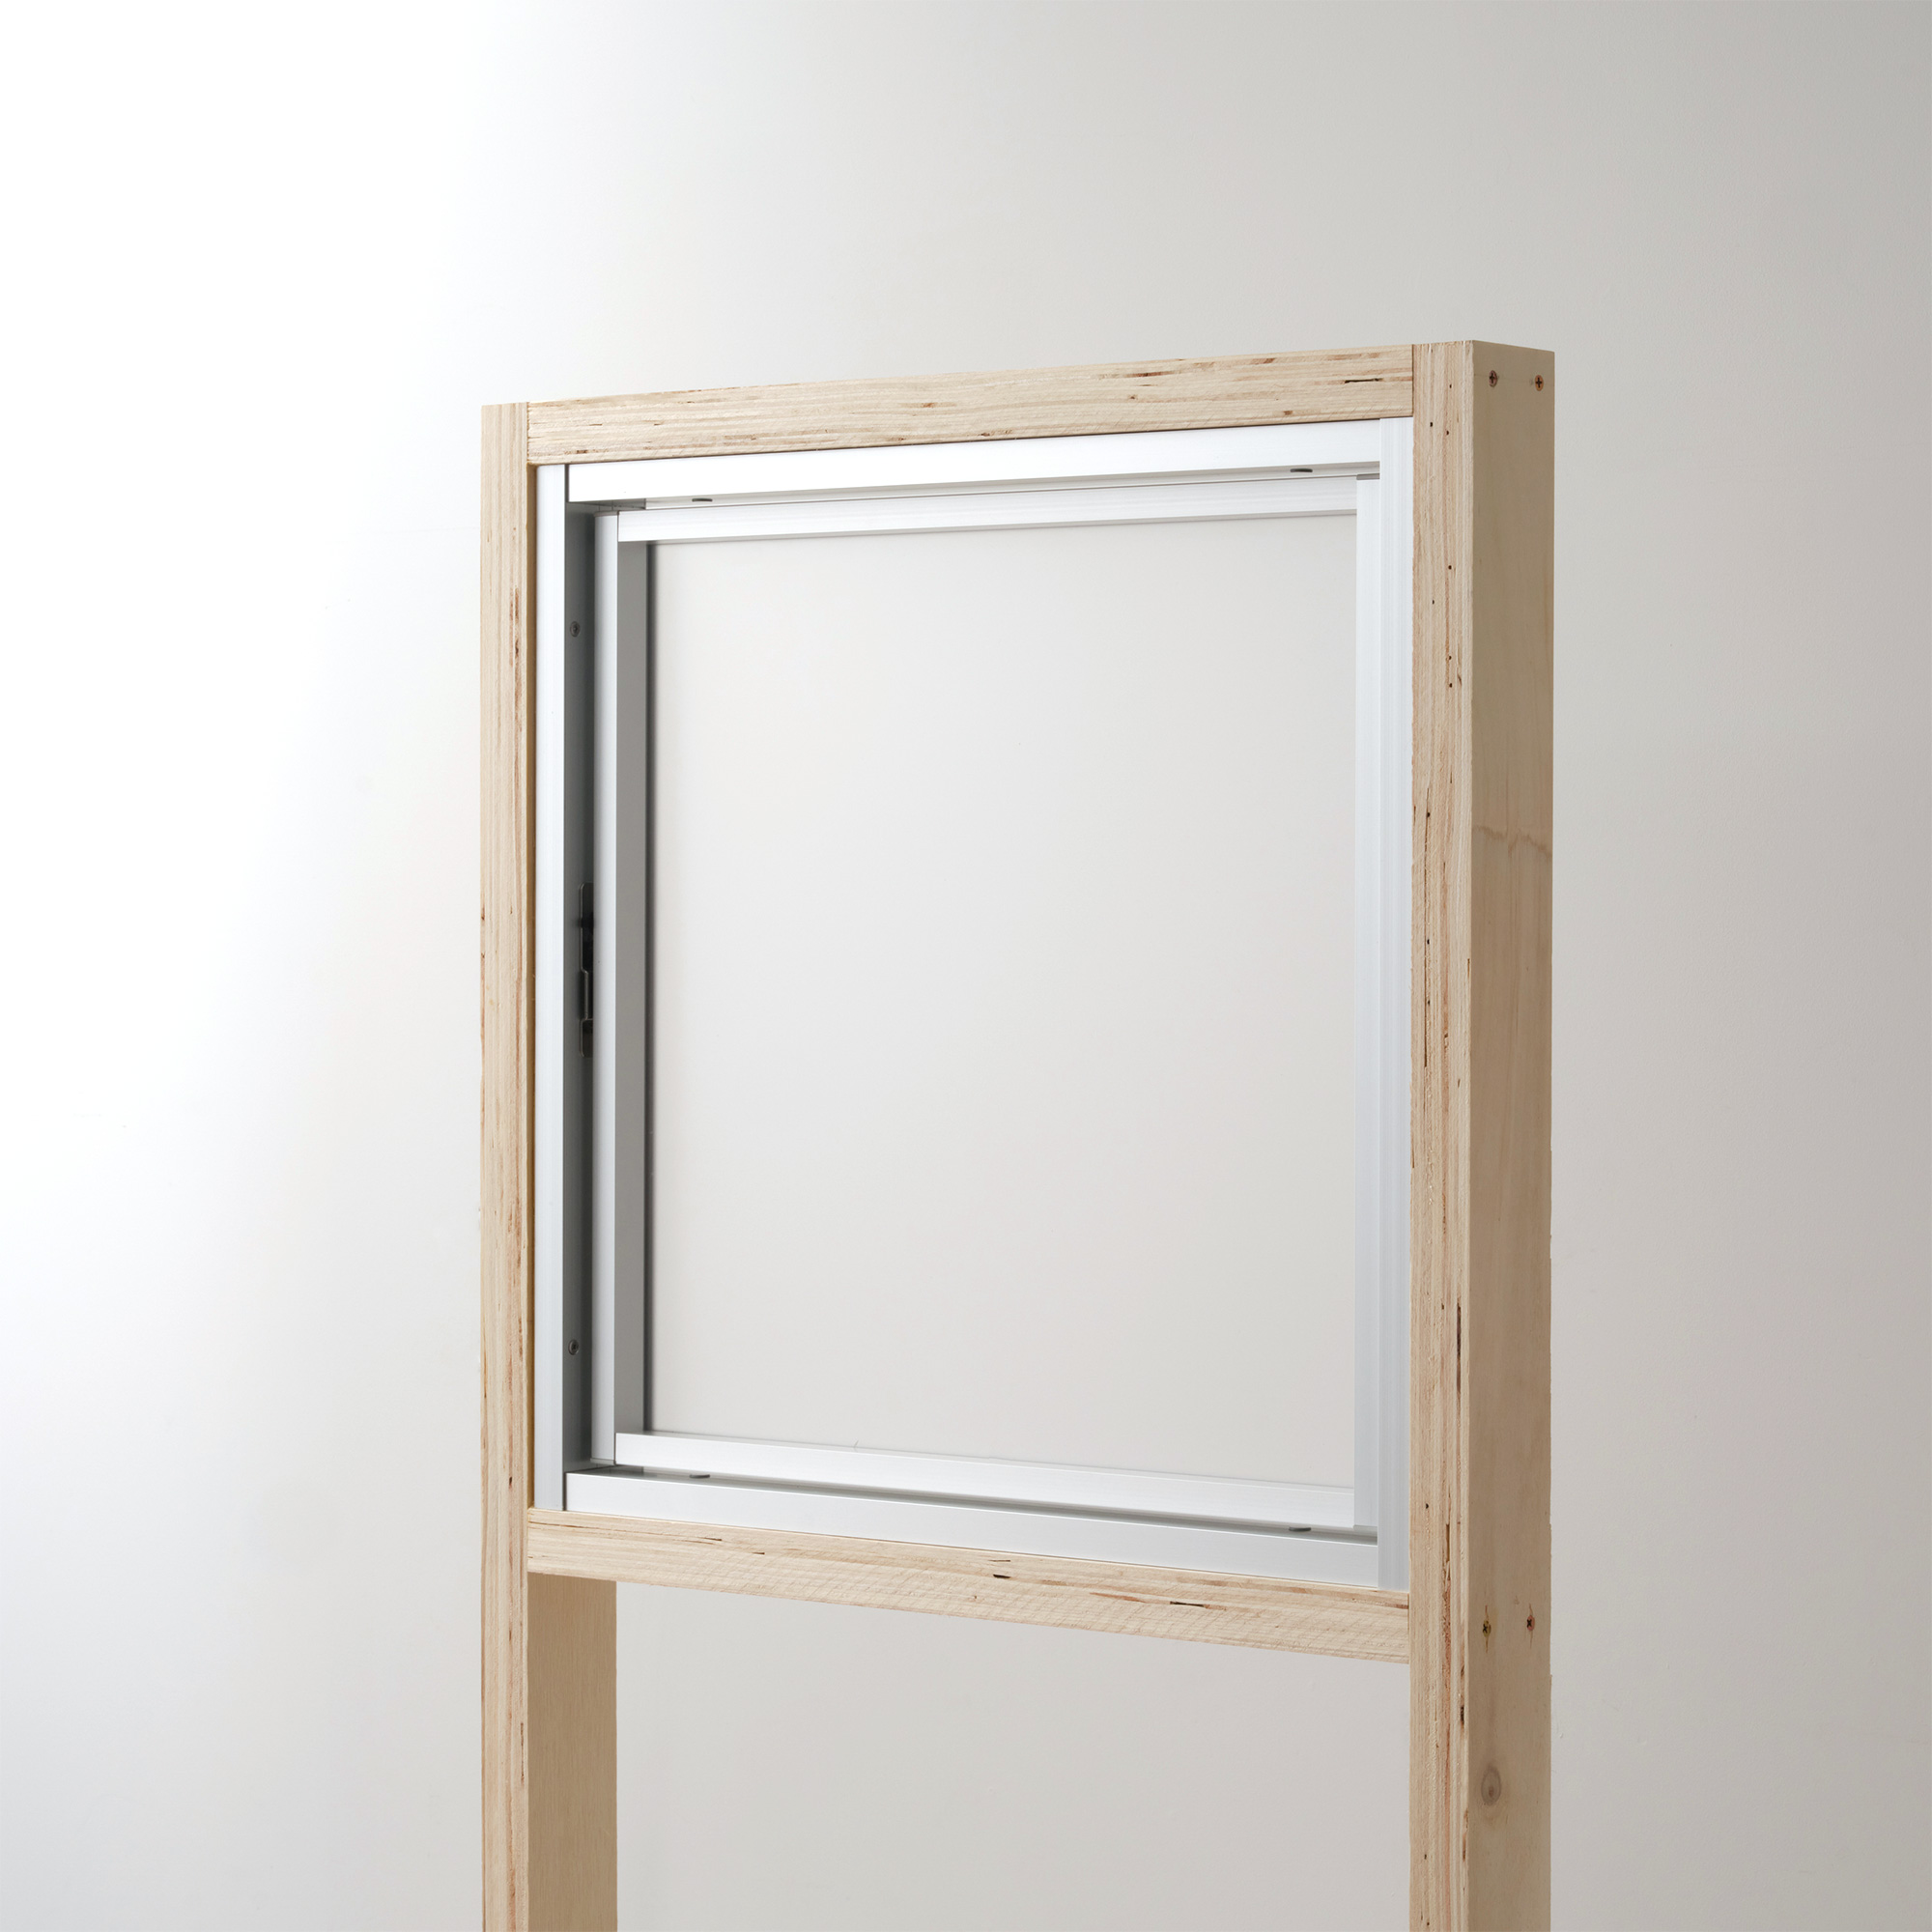 室内アルミサッシ 回転窓＋FIX窓 シルバー 樹脂パネル DW-DR013-20-G201 回転窓 W500 H500 マット樹脂パネル